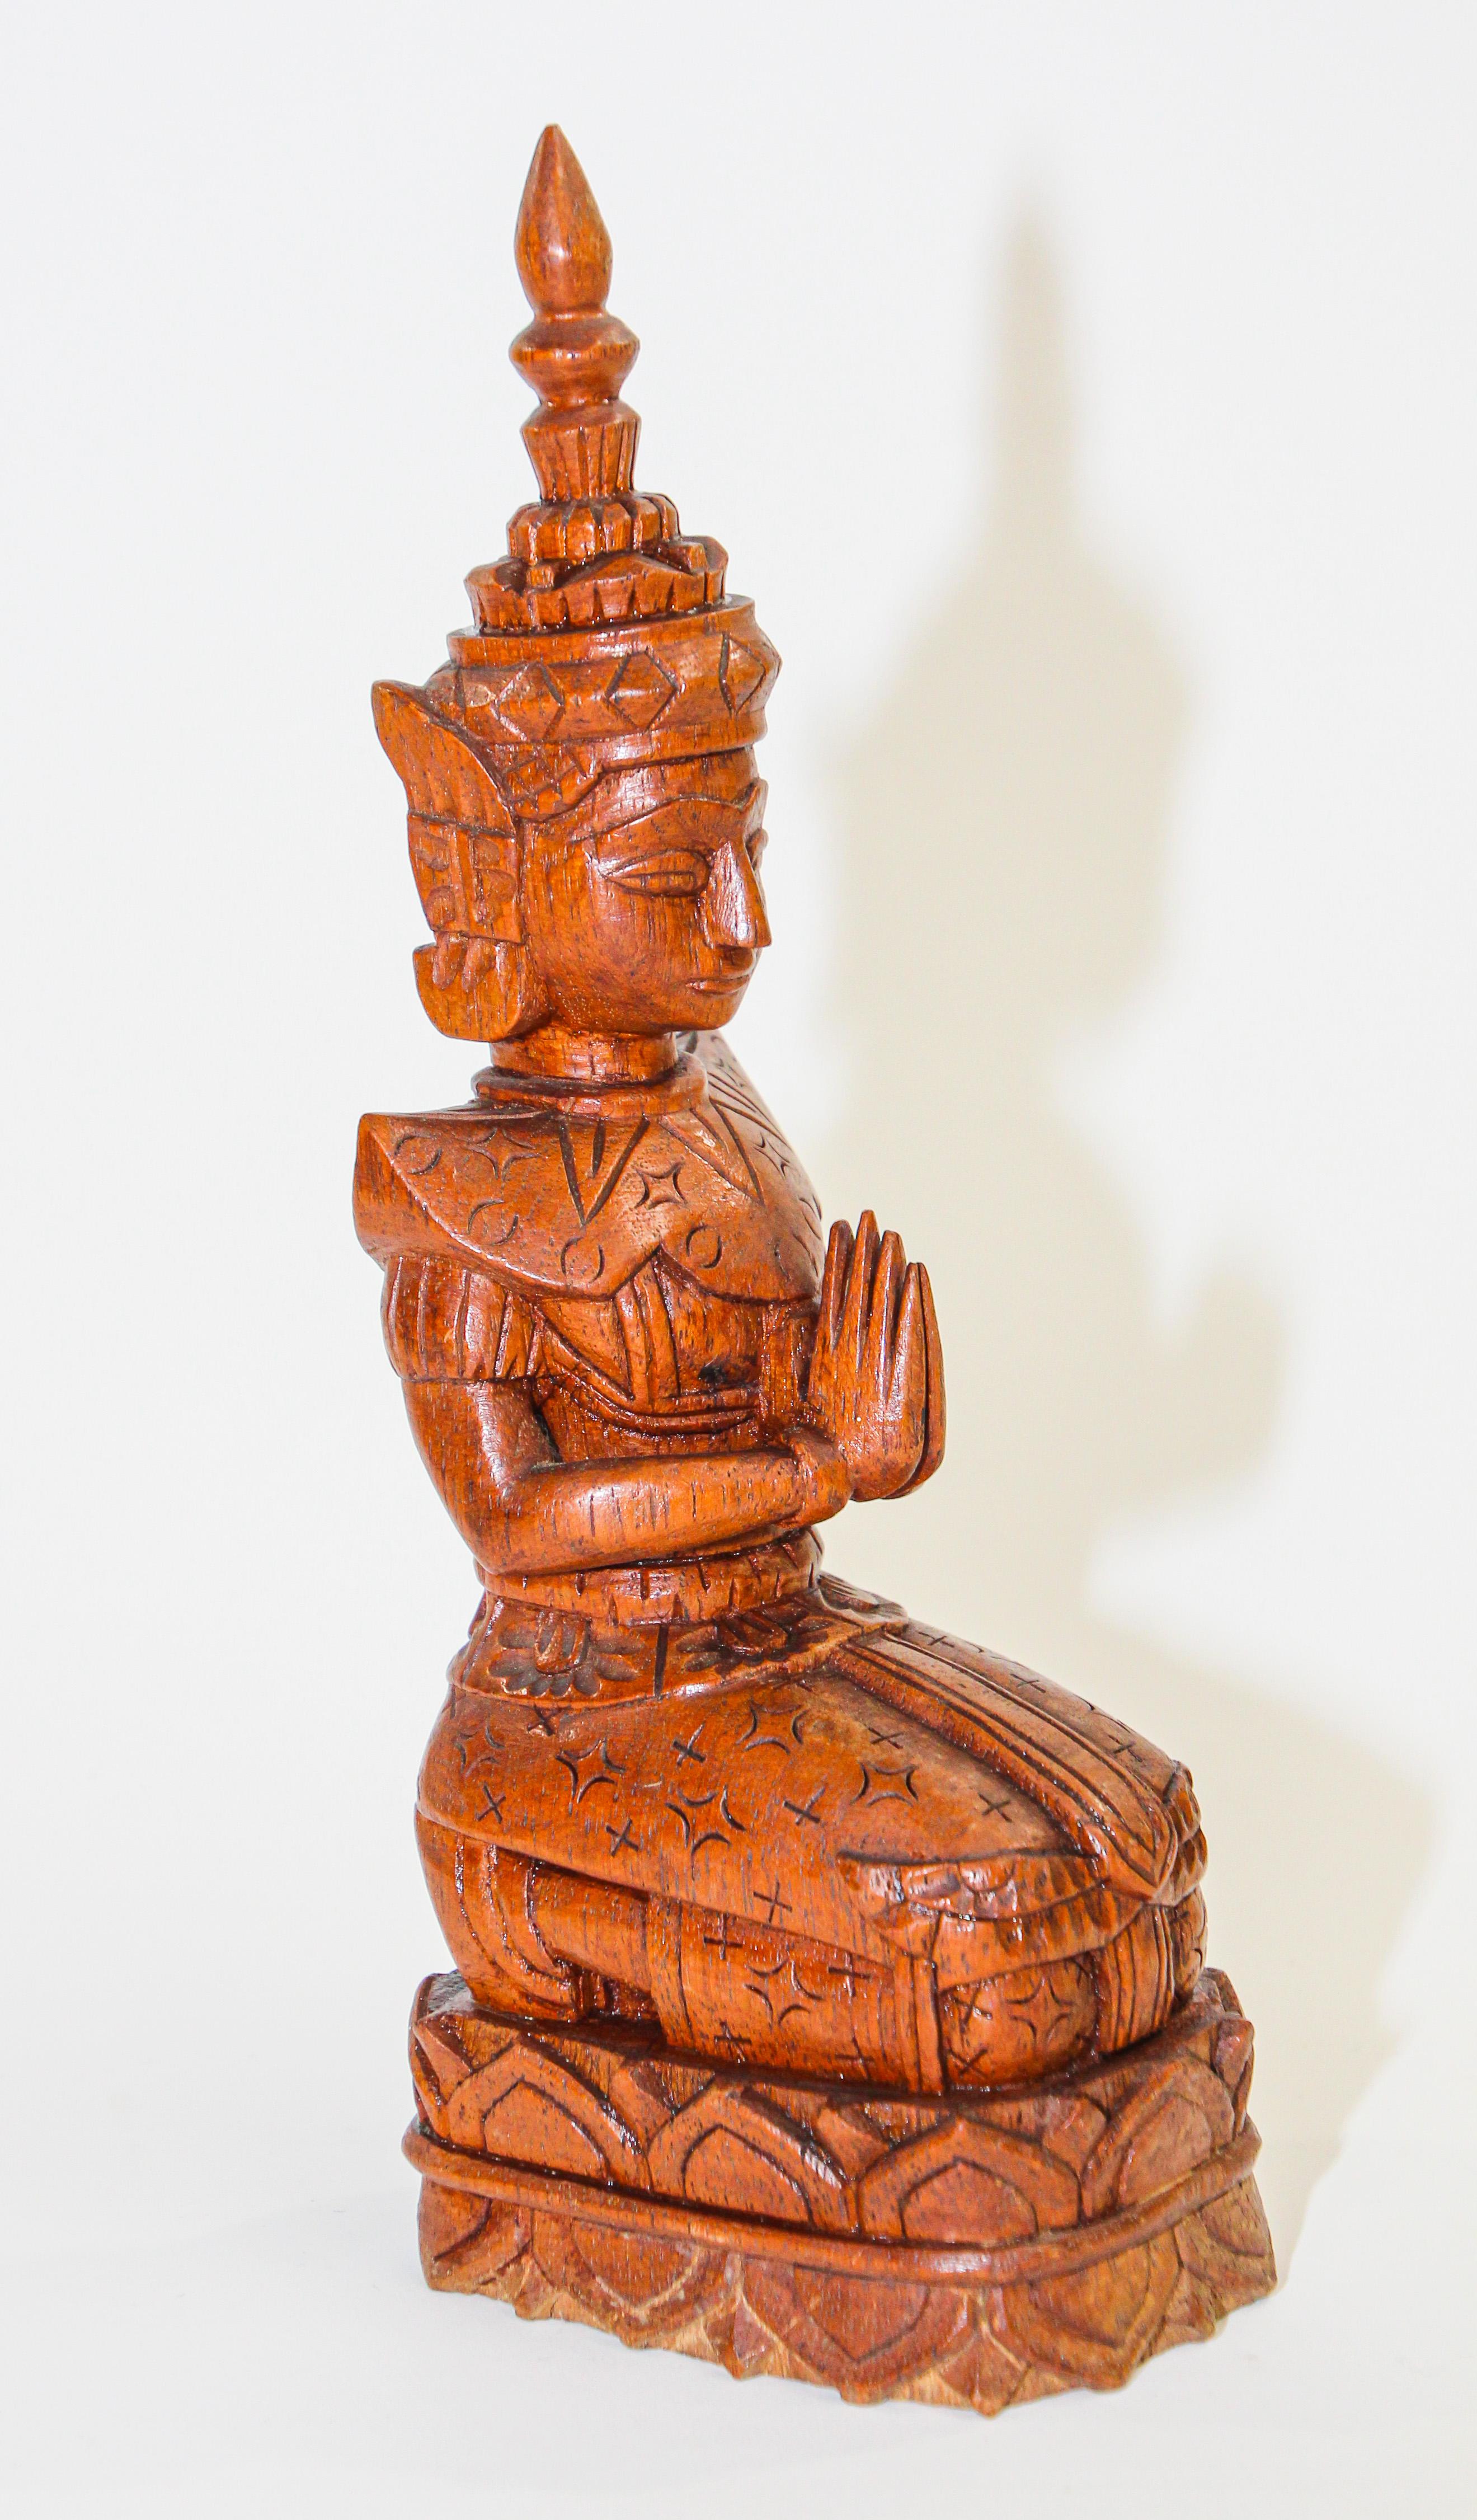 Vintage Holzschnitzerei Kunst Thai Buddha Figur kniend und betend.
Vintage Mid Jahrhundert Holzschnitzerei Kunst eines friedlichen Thai weibliche Figur kniend und betend. 
Wunderschöne, detailgetreue Nachbildung eines klassischen thailändischen